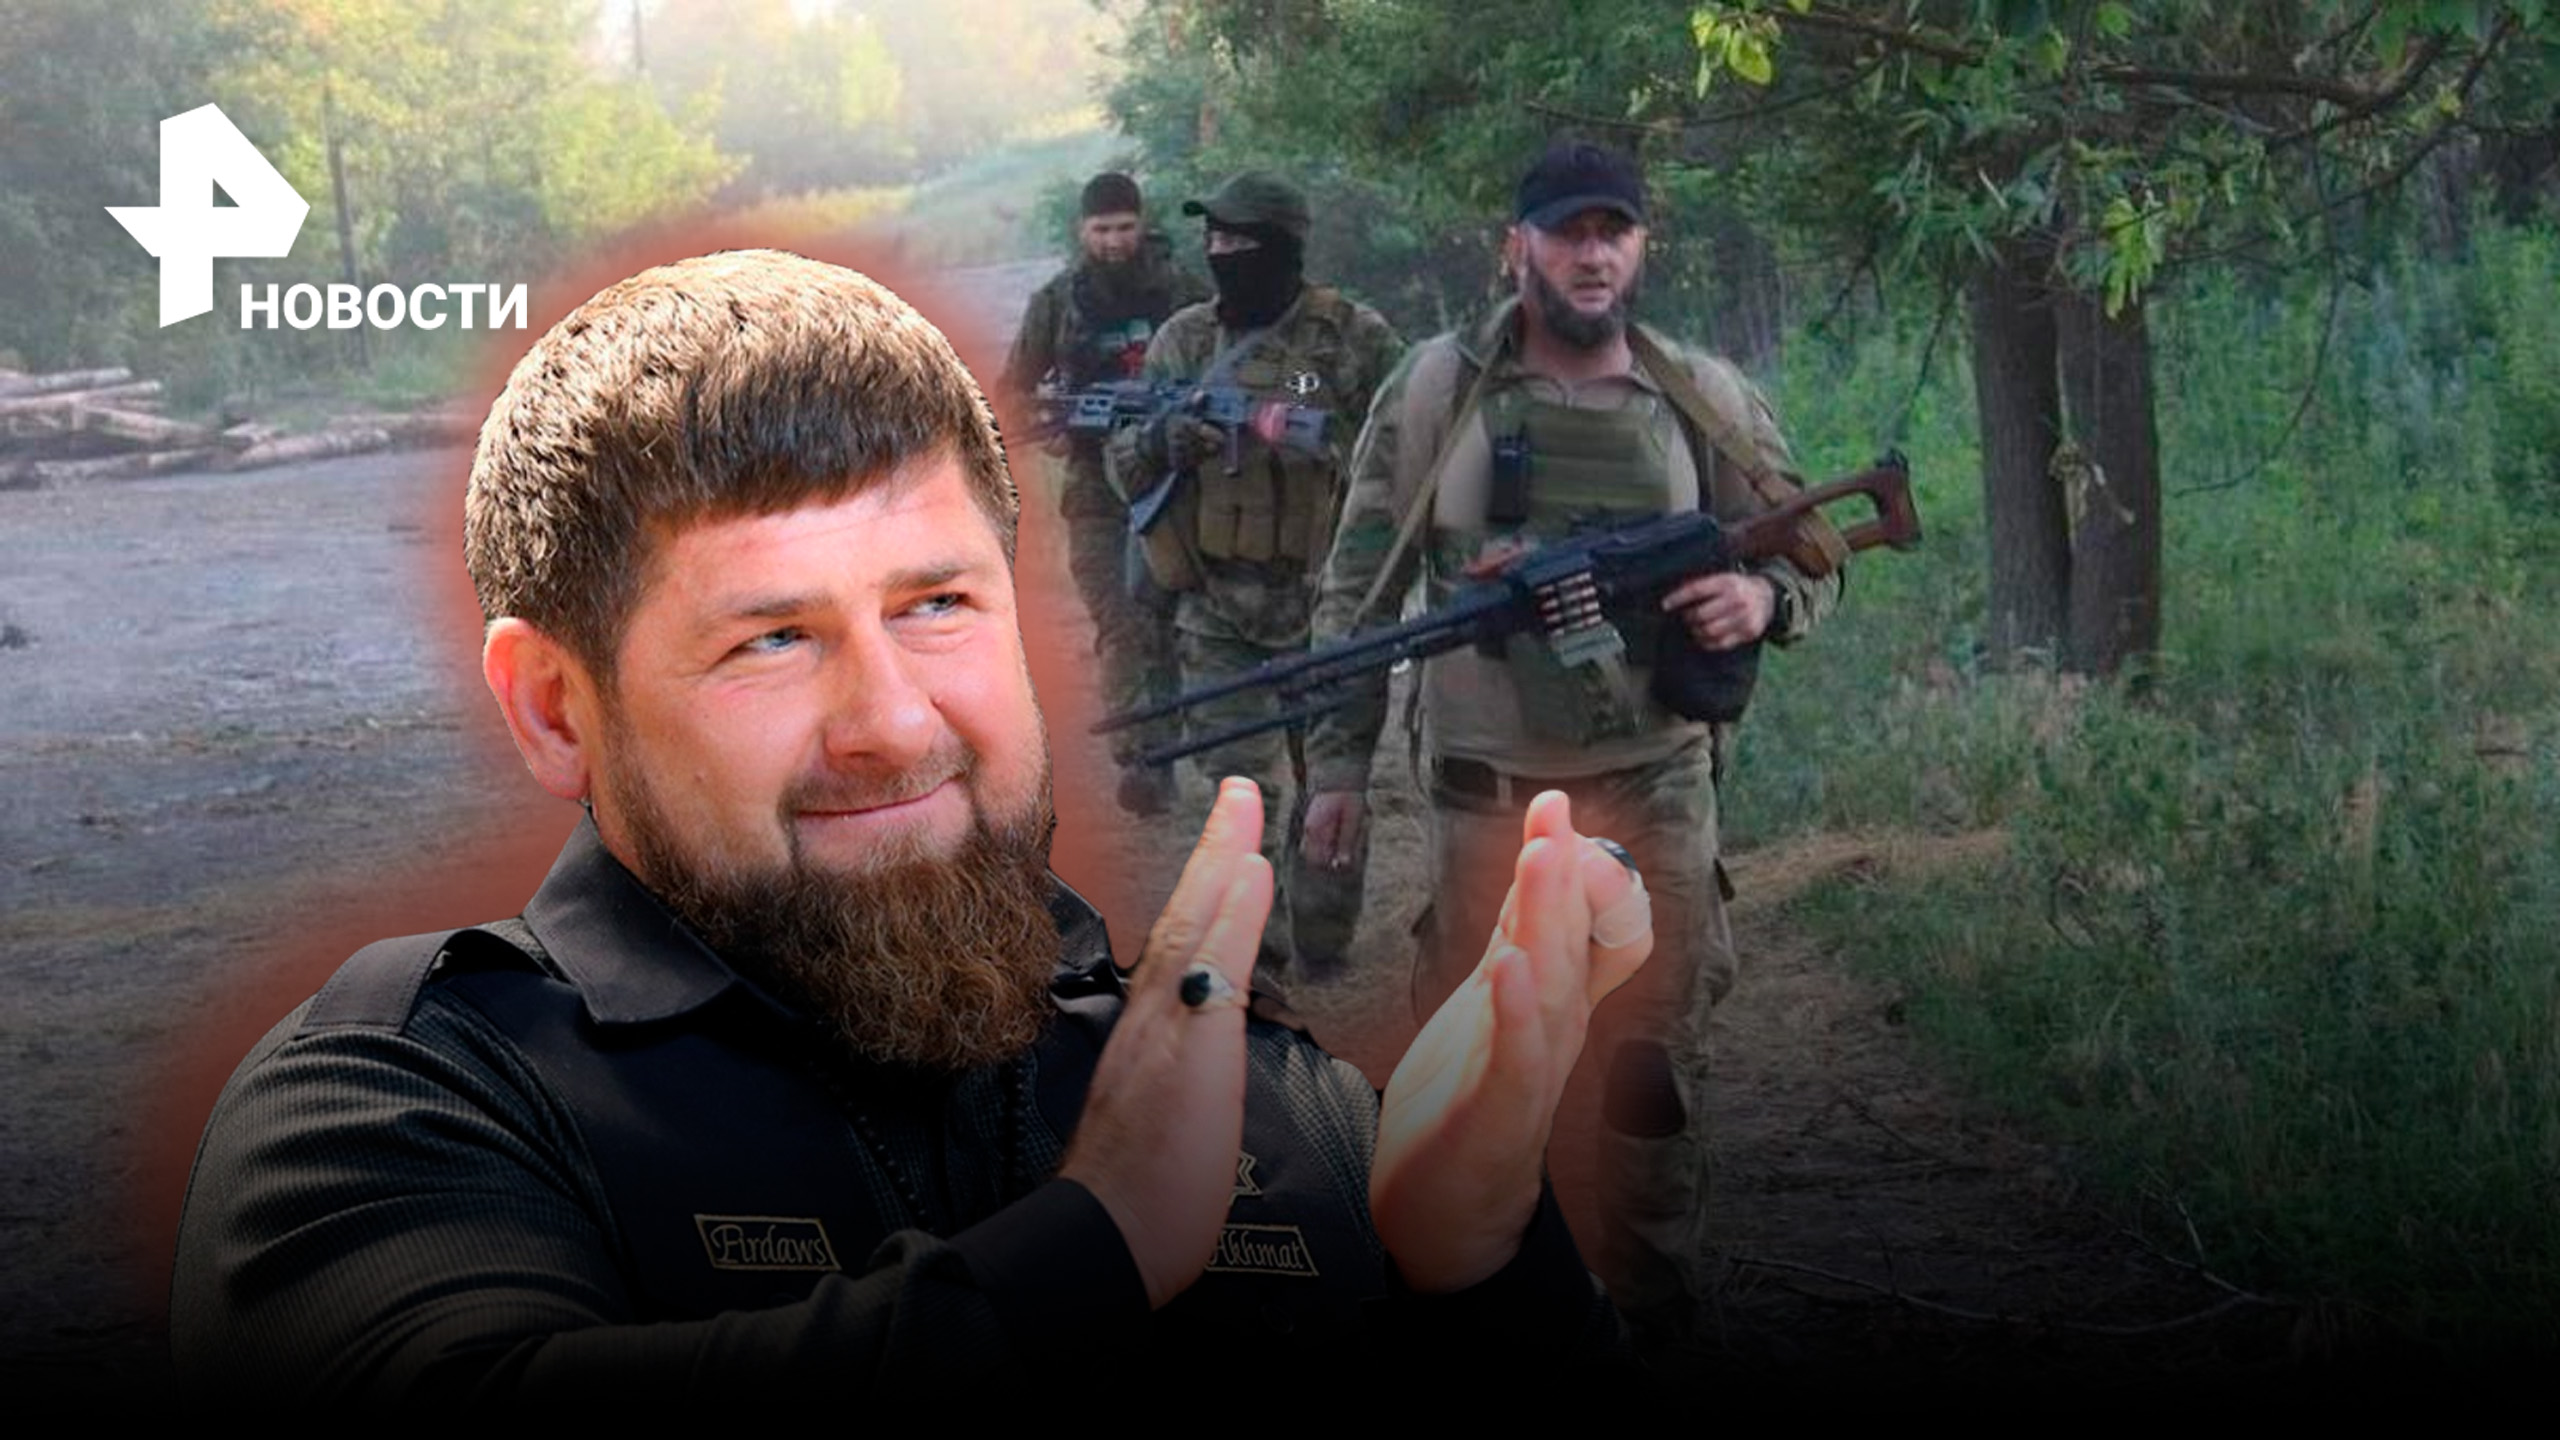 Кадыров опубликовал видео захвата в плен украинского военного спецназом "Ахмат" под Северском / РЕН